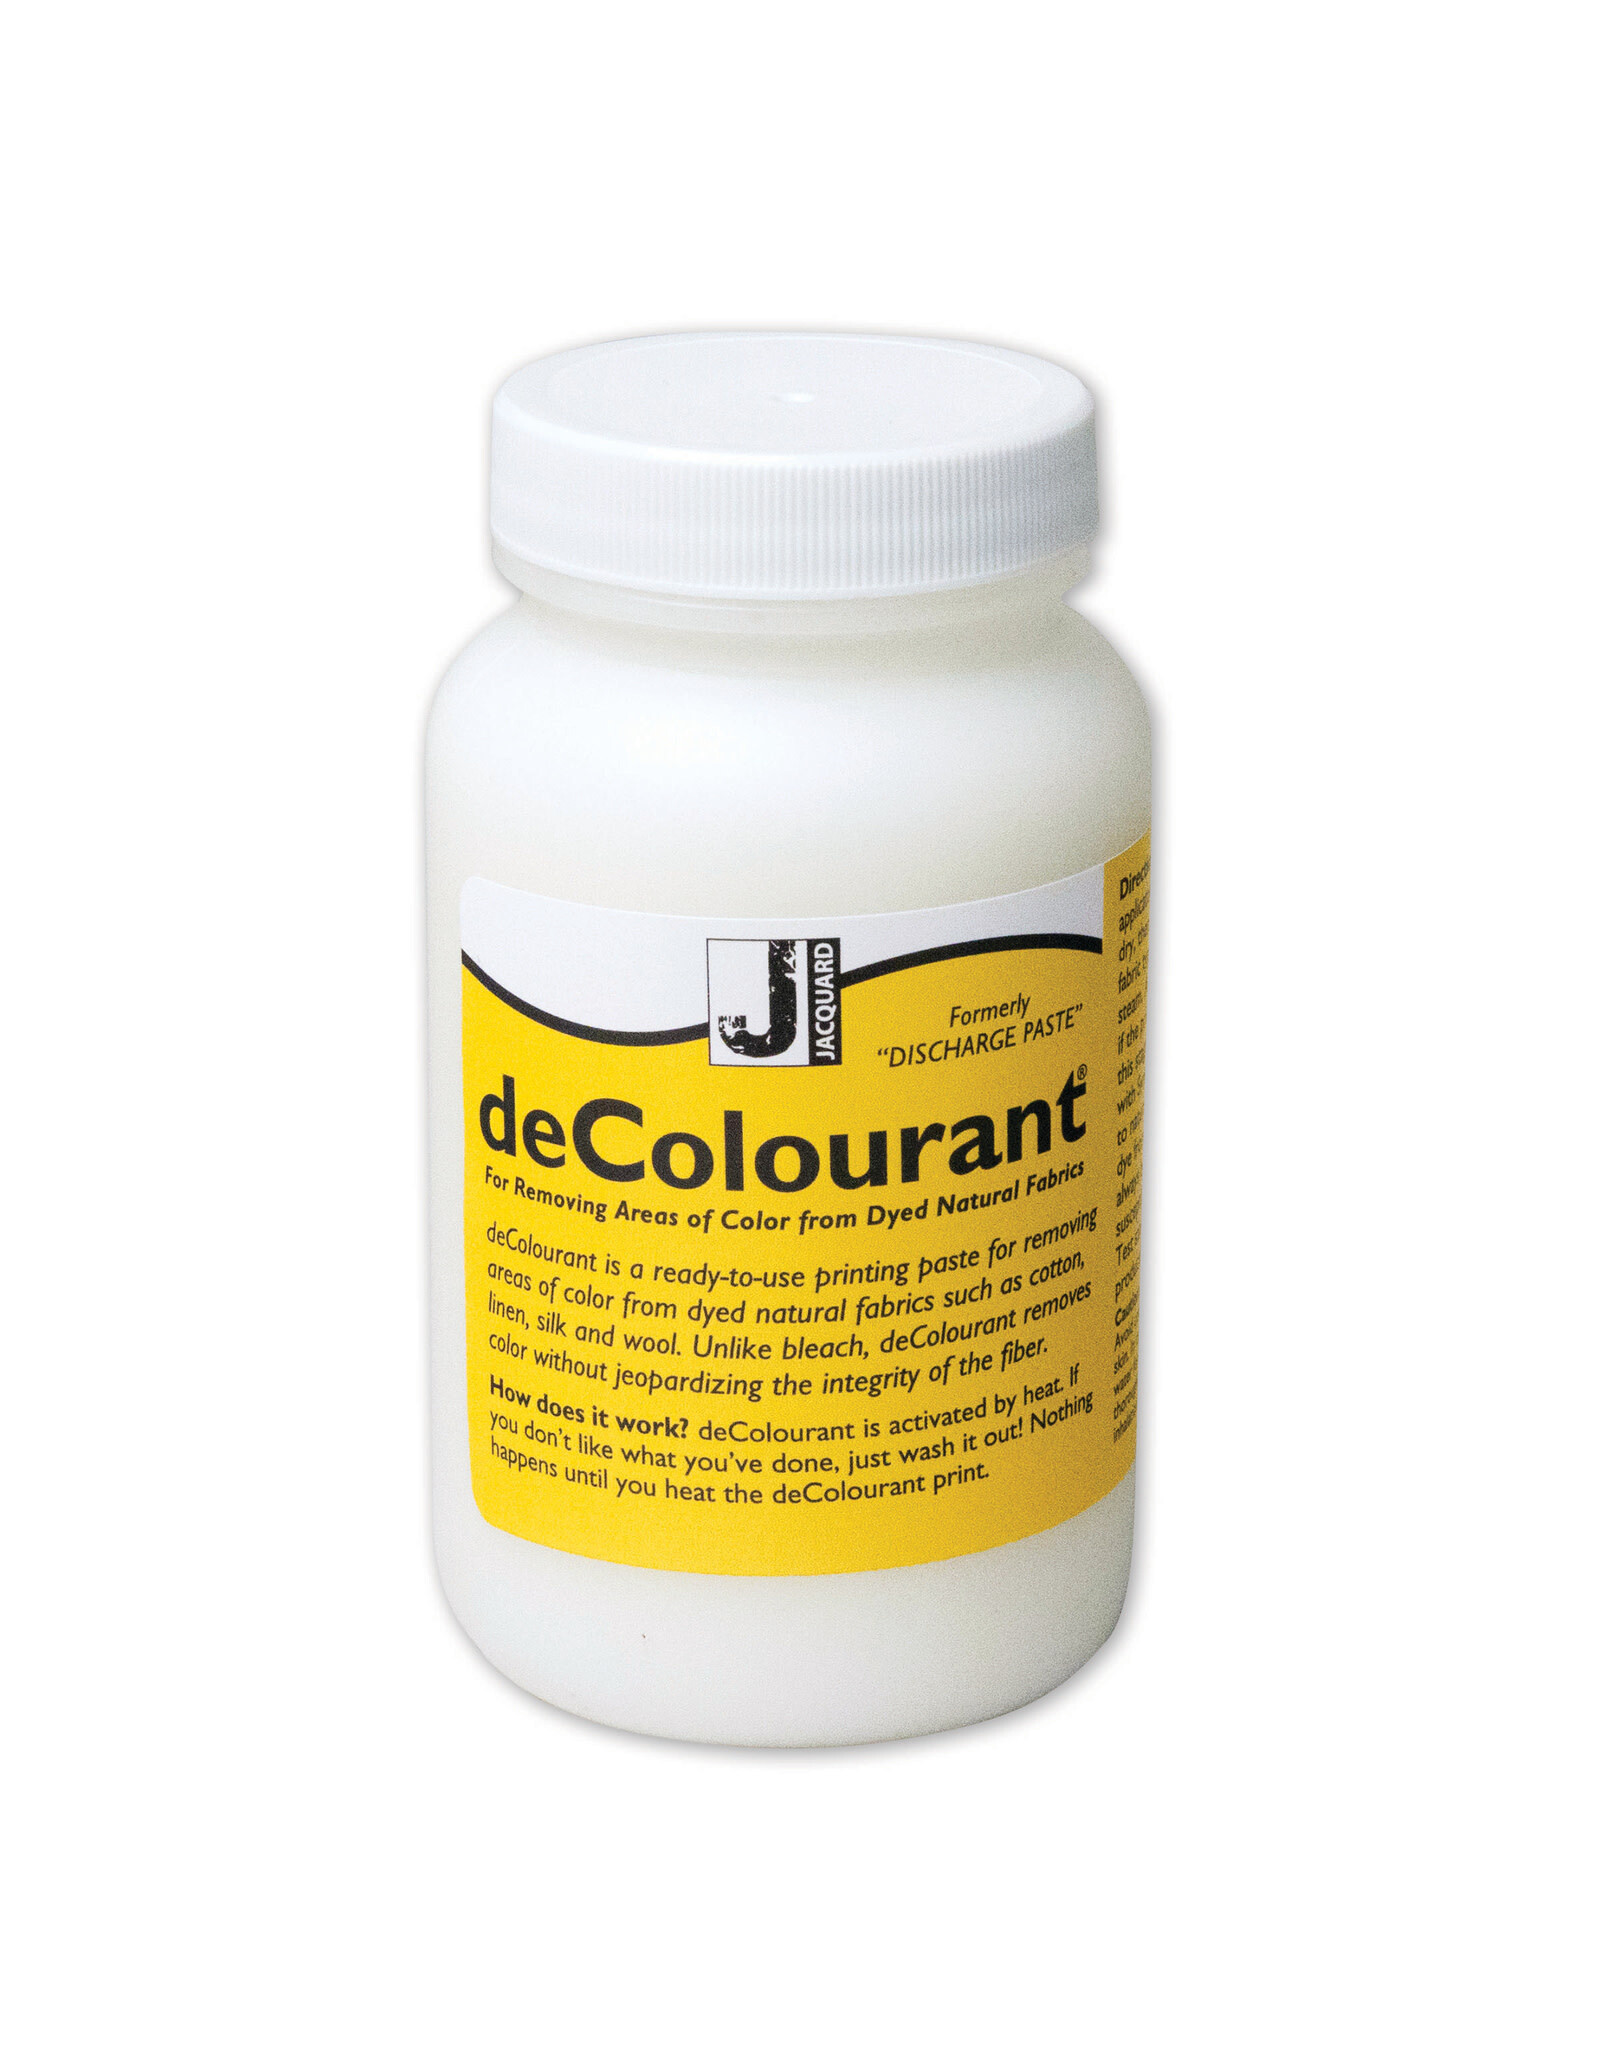 Jacquard Jacquard Decoulorant, 8oz